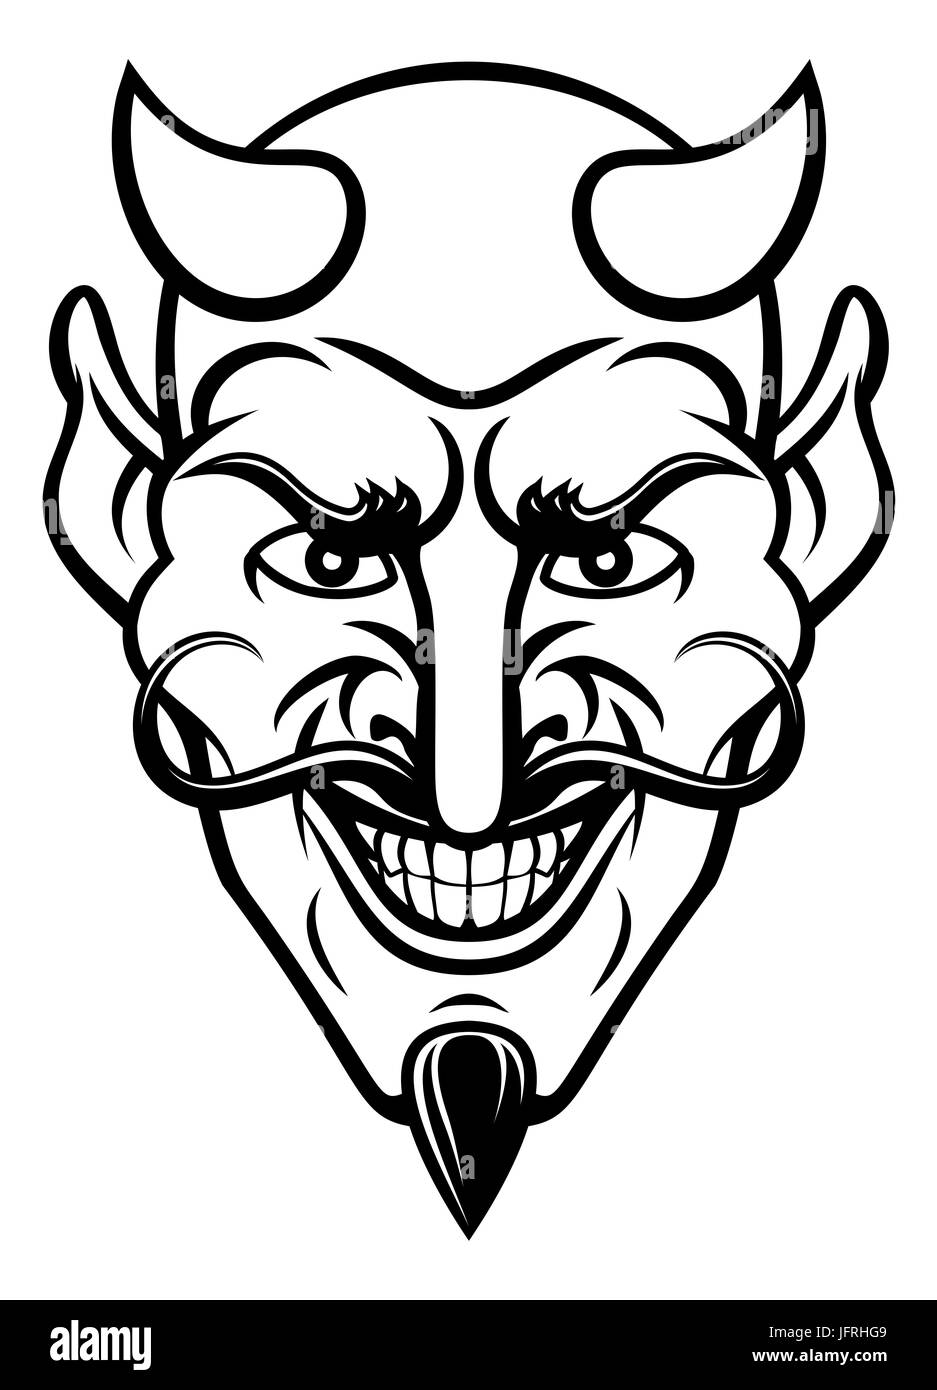 Un diable personnage mascotte sportive face avec un sourire maléfique Banque D'Images